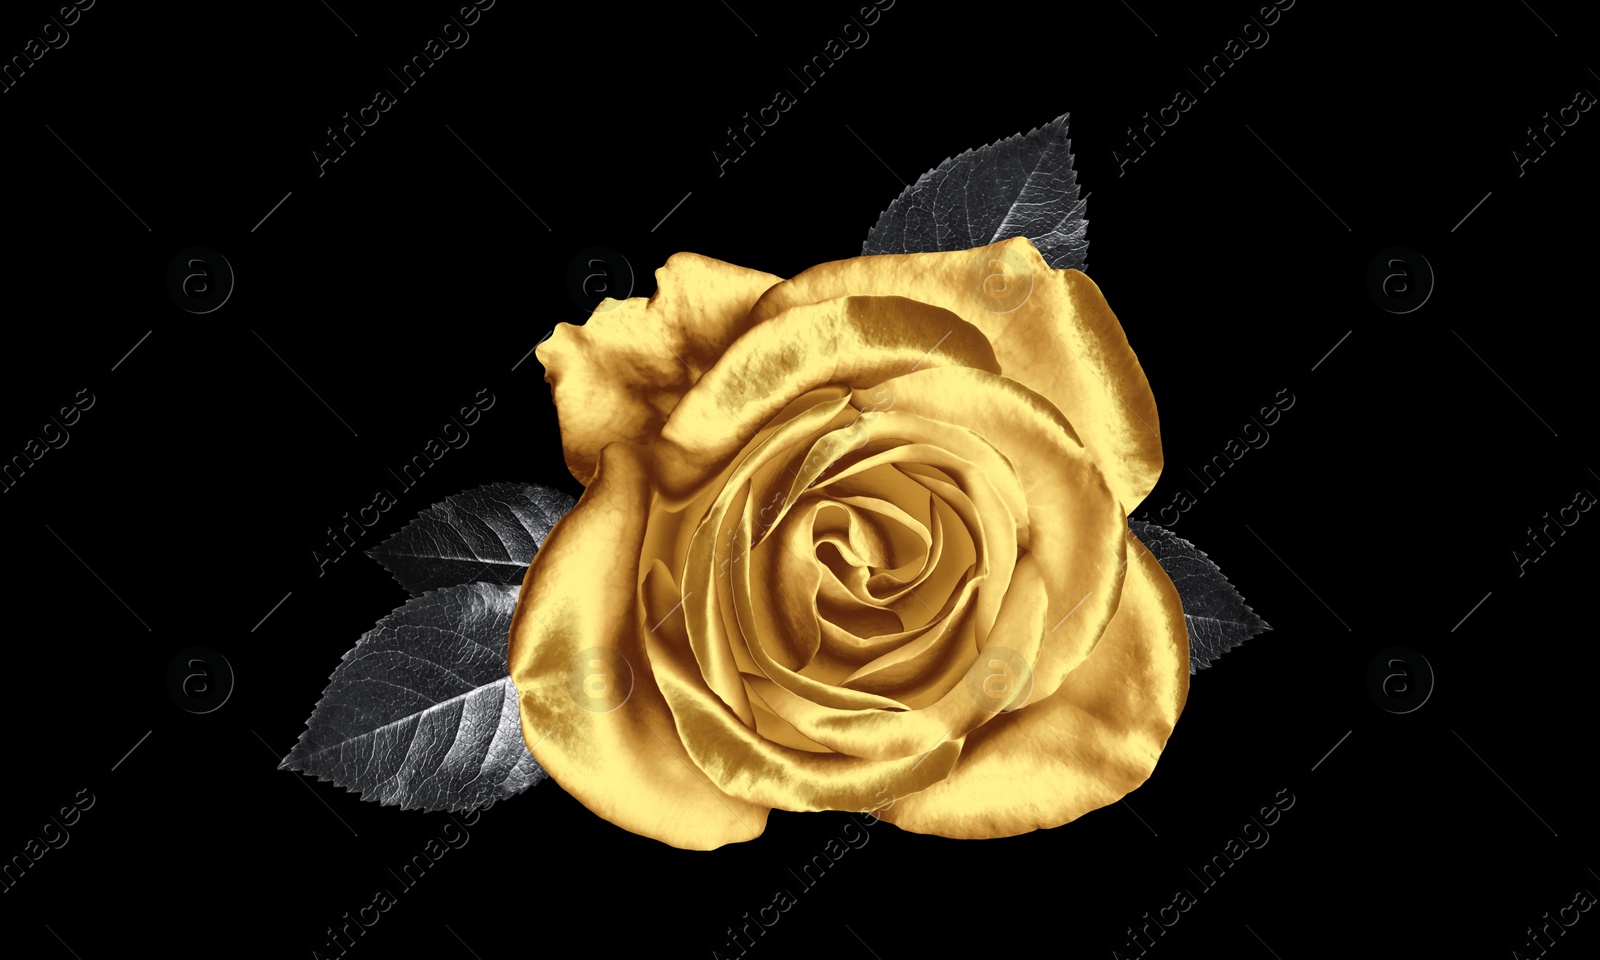 Image of Amazing shiny golden rose on black background